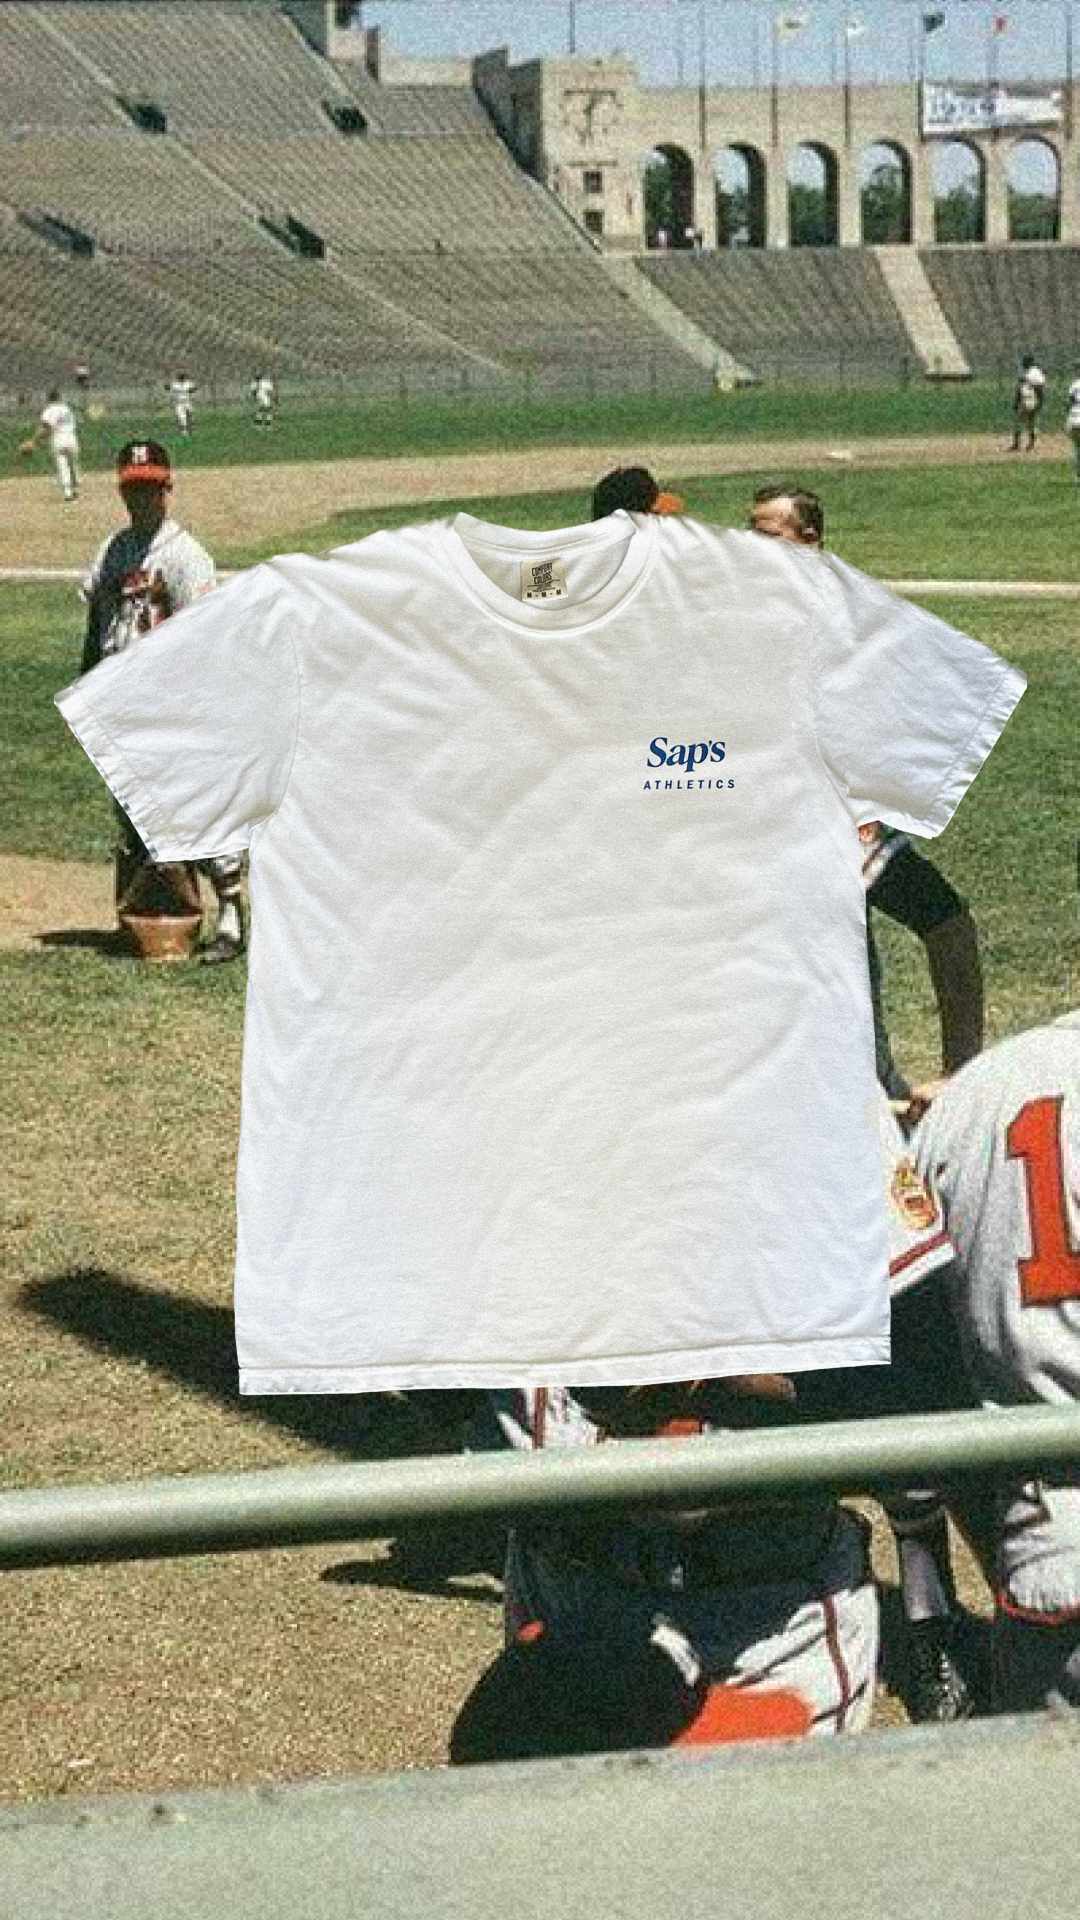 Sap's Athletics Shirt